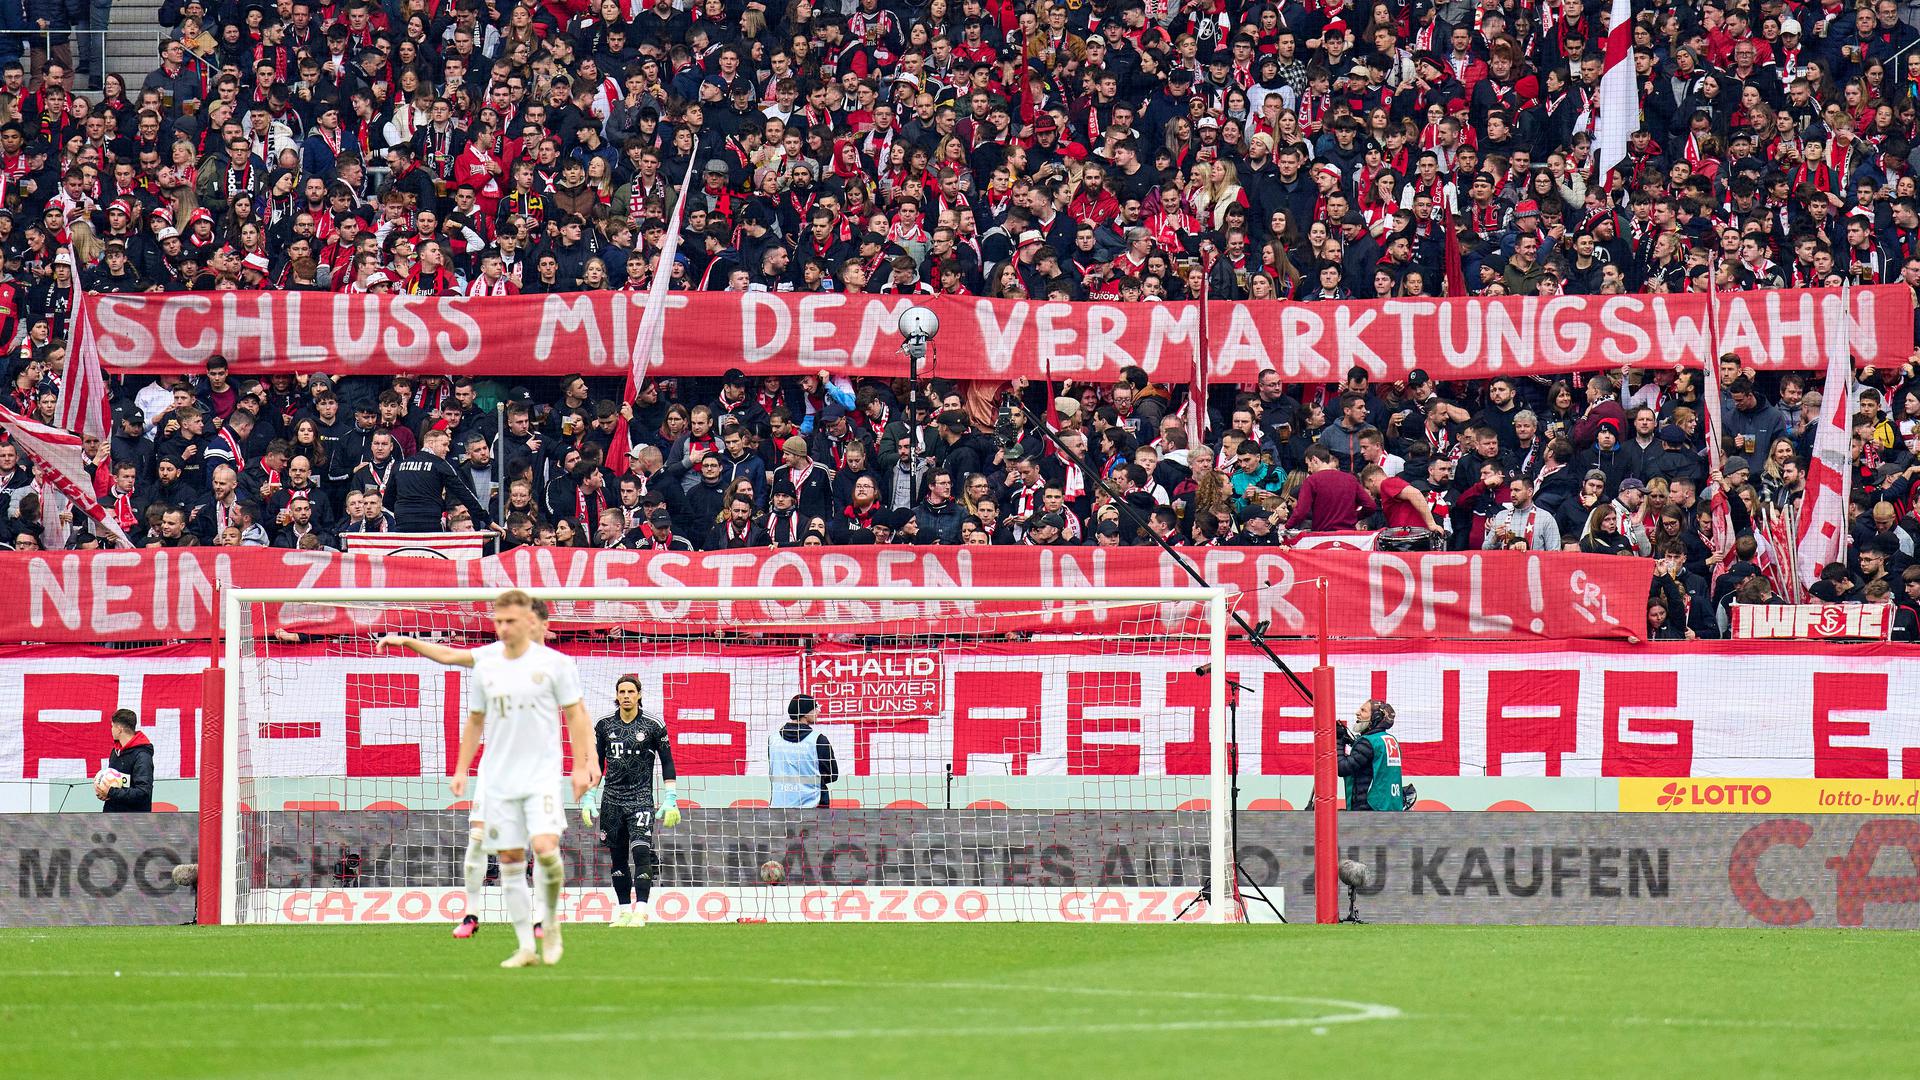 Protestaktionen gegen DFL-Pläne: In den Fan-Kurven wie hier in Freiburg beim Spiel gegen Bayern München ist die Abneigung gegenüber einem Investor groß. 